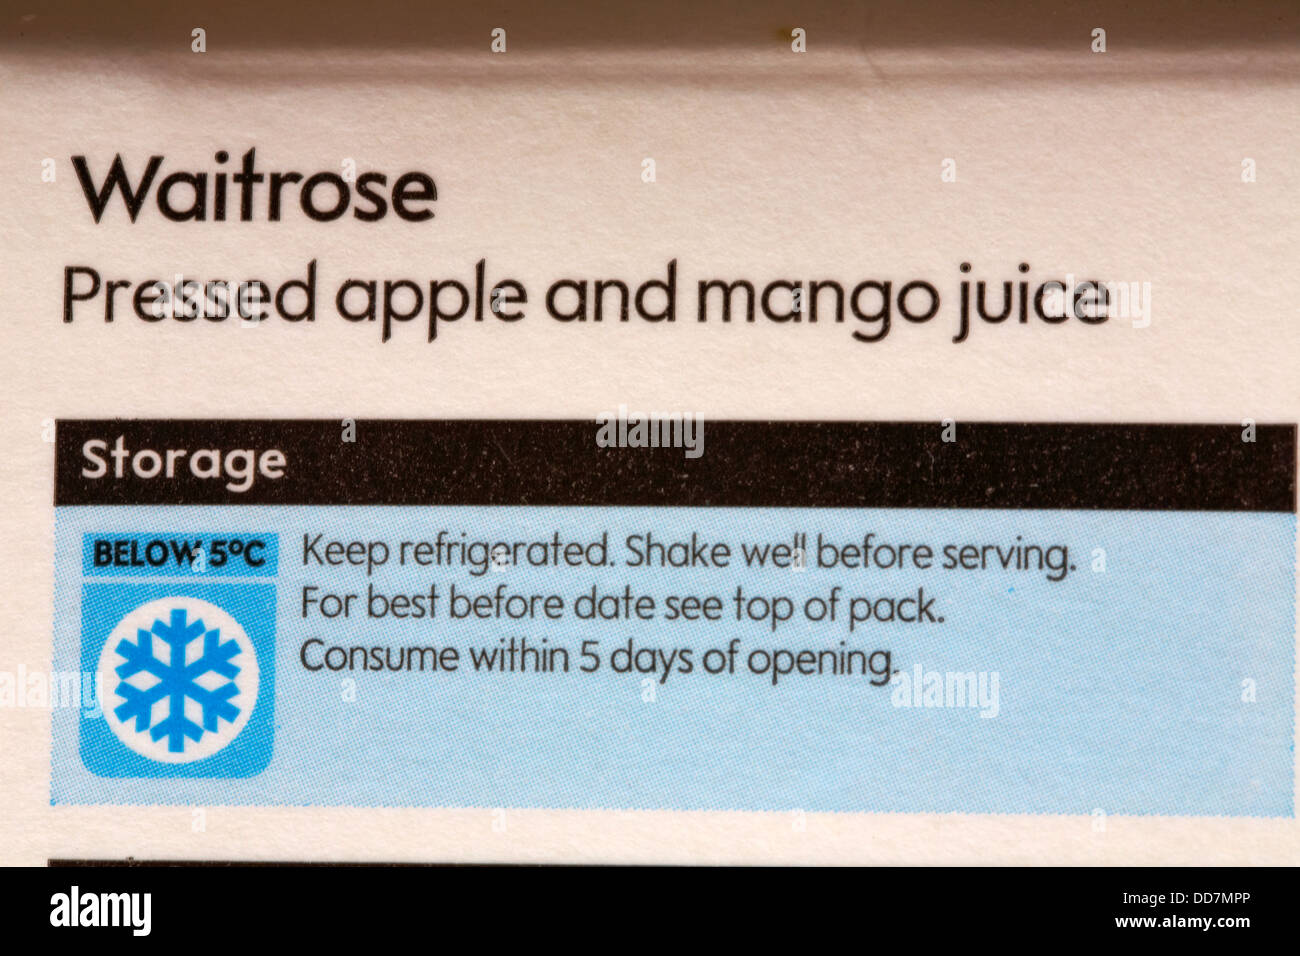 Storage instructions on carton of Waitrose pressed apple and mango juice Stock Photo